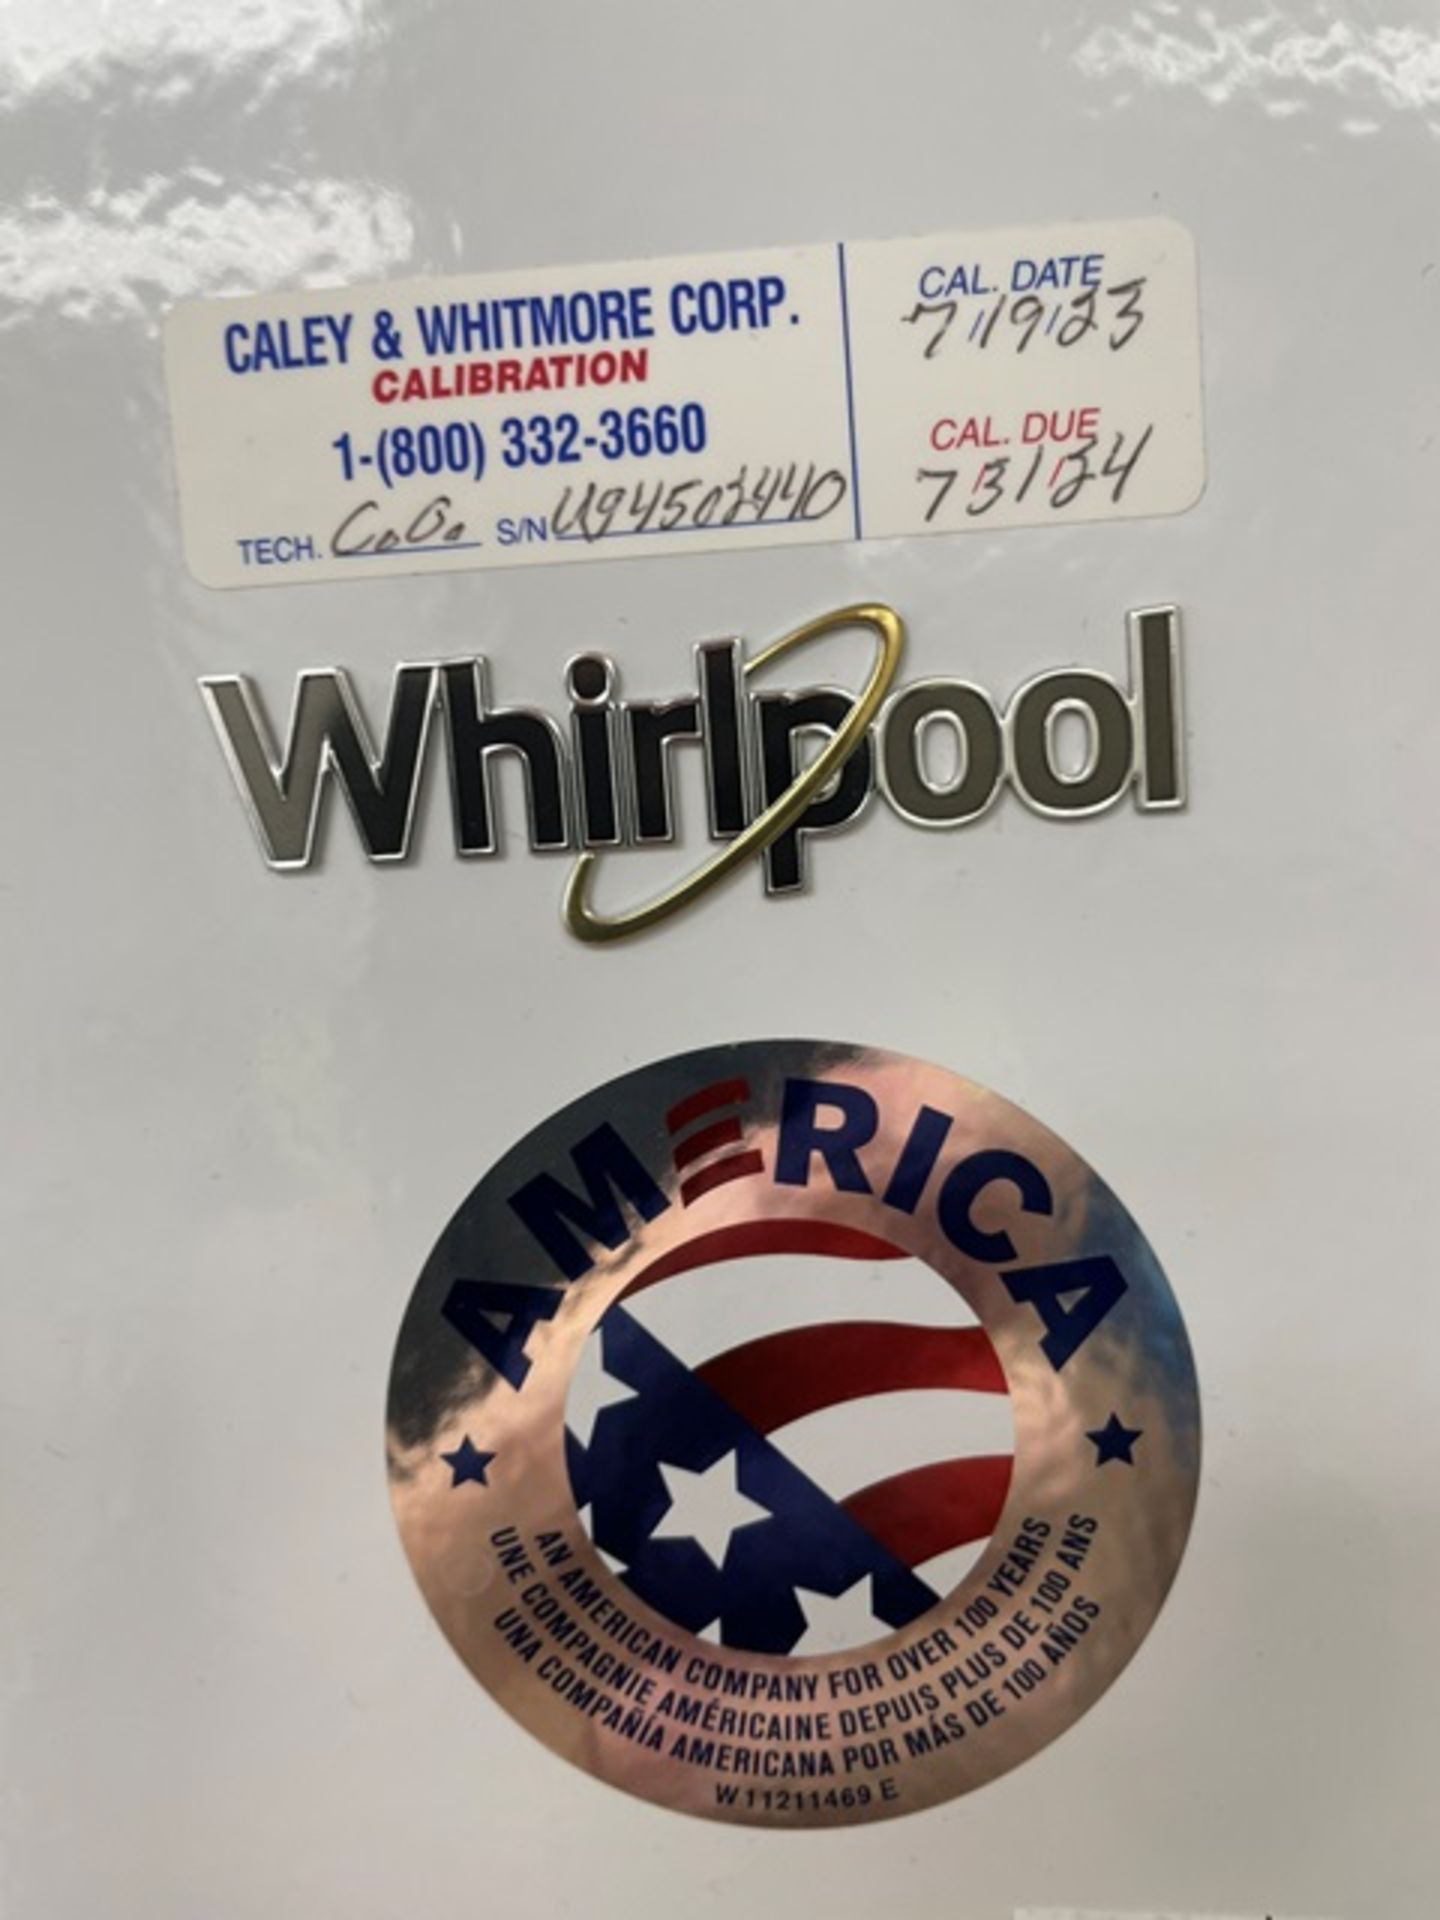 Whirlpool Refrigerator - Image 2 of 2